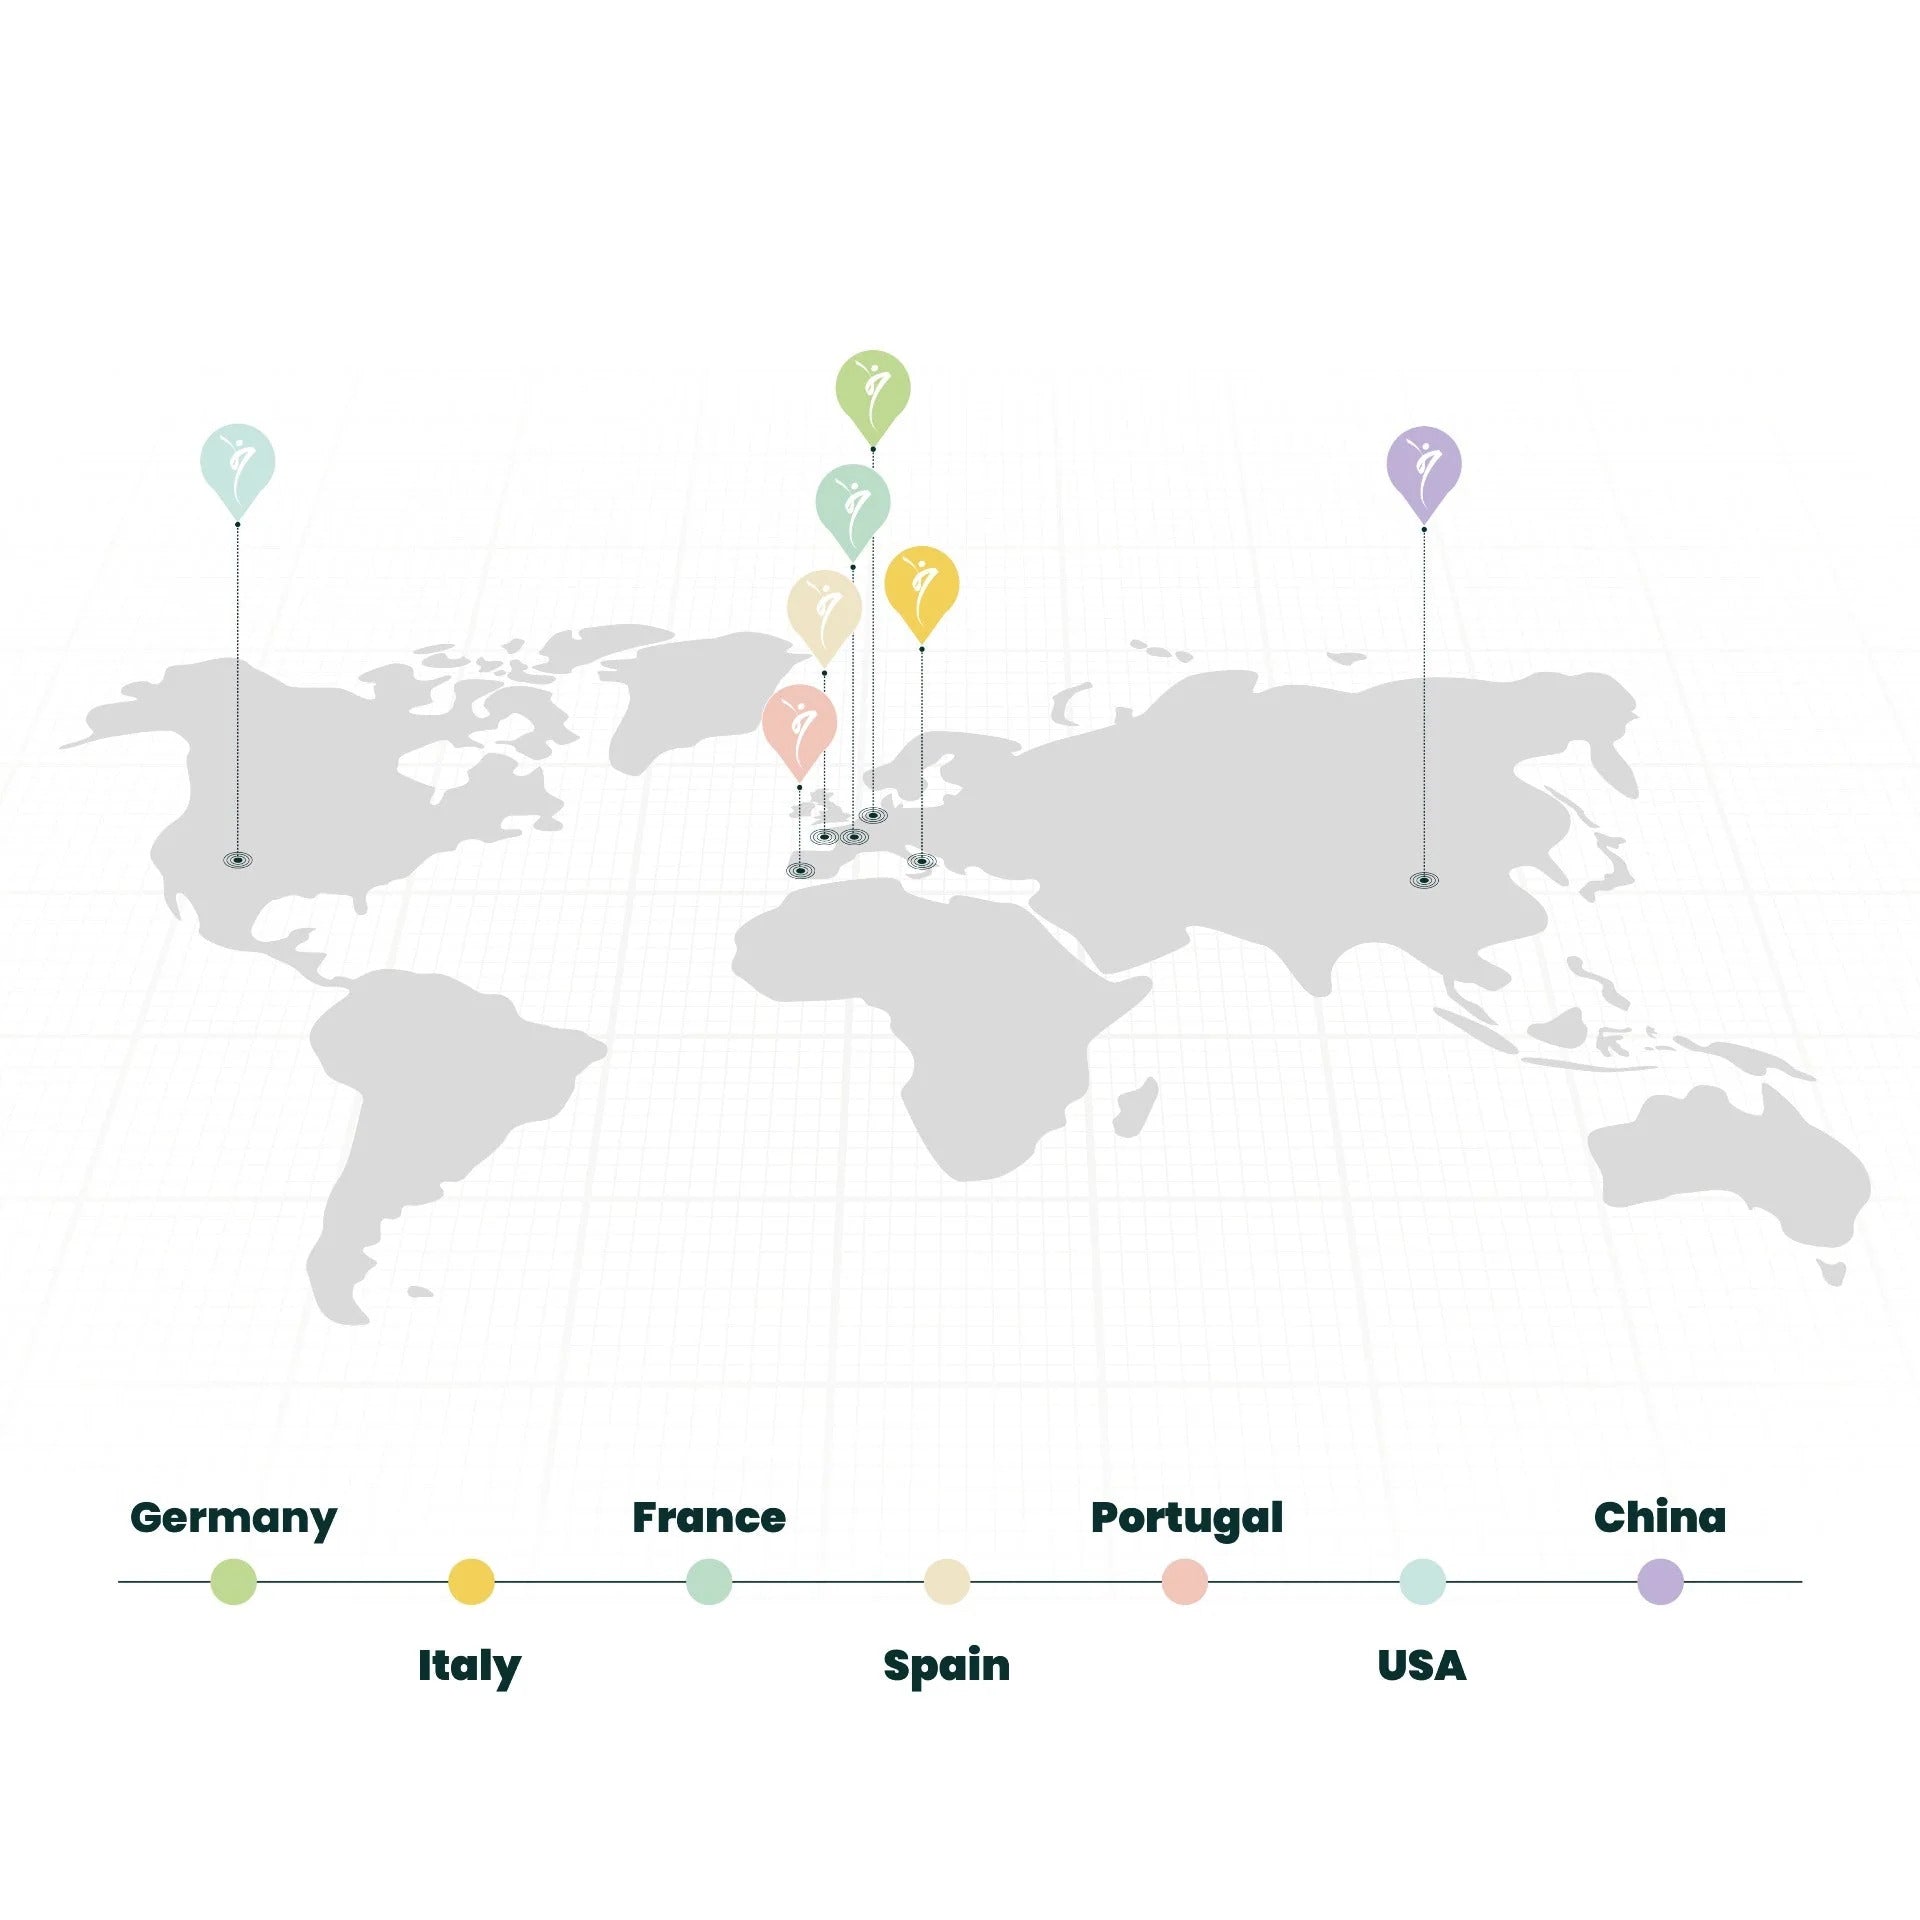 Weltkarte in Grautönen mit farbigen Markierungen über verschiedenen Ländern wie Deutschland, Frankreich, Italien und anderen, jeweils verbunden mit einer Farblegende am unteren Rand.